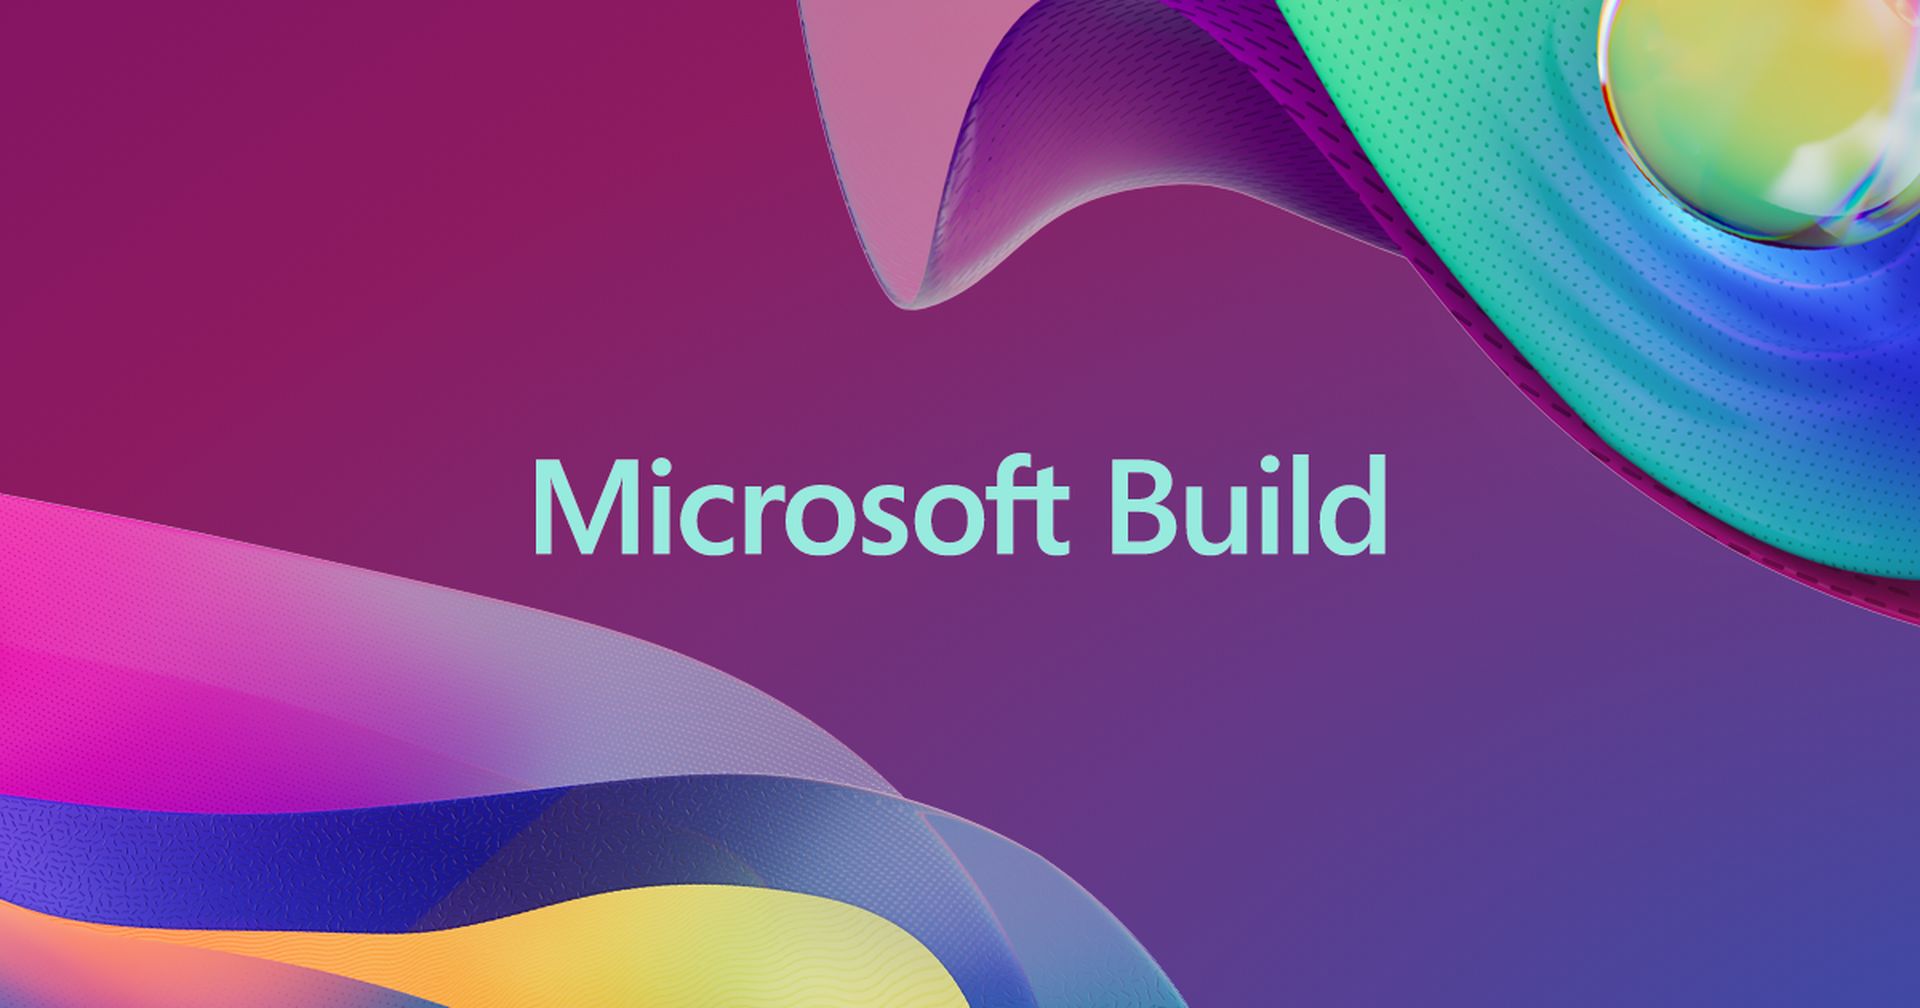 Aperçu : quelle est la prochaine étape de Microsoft ?